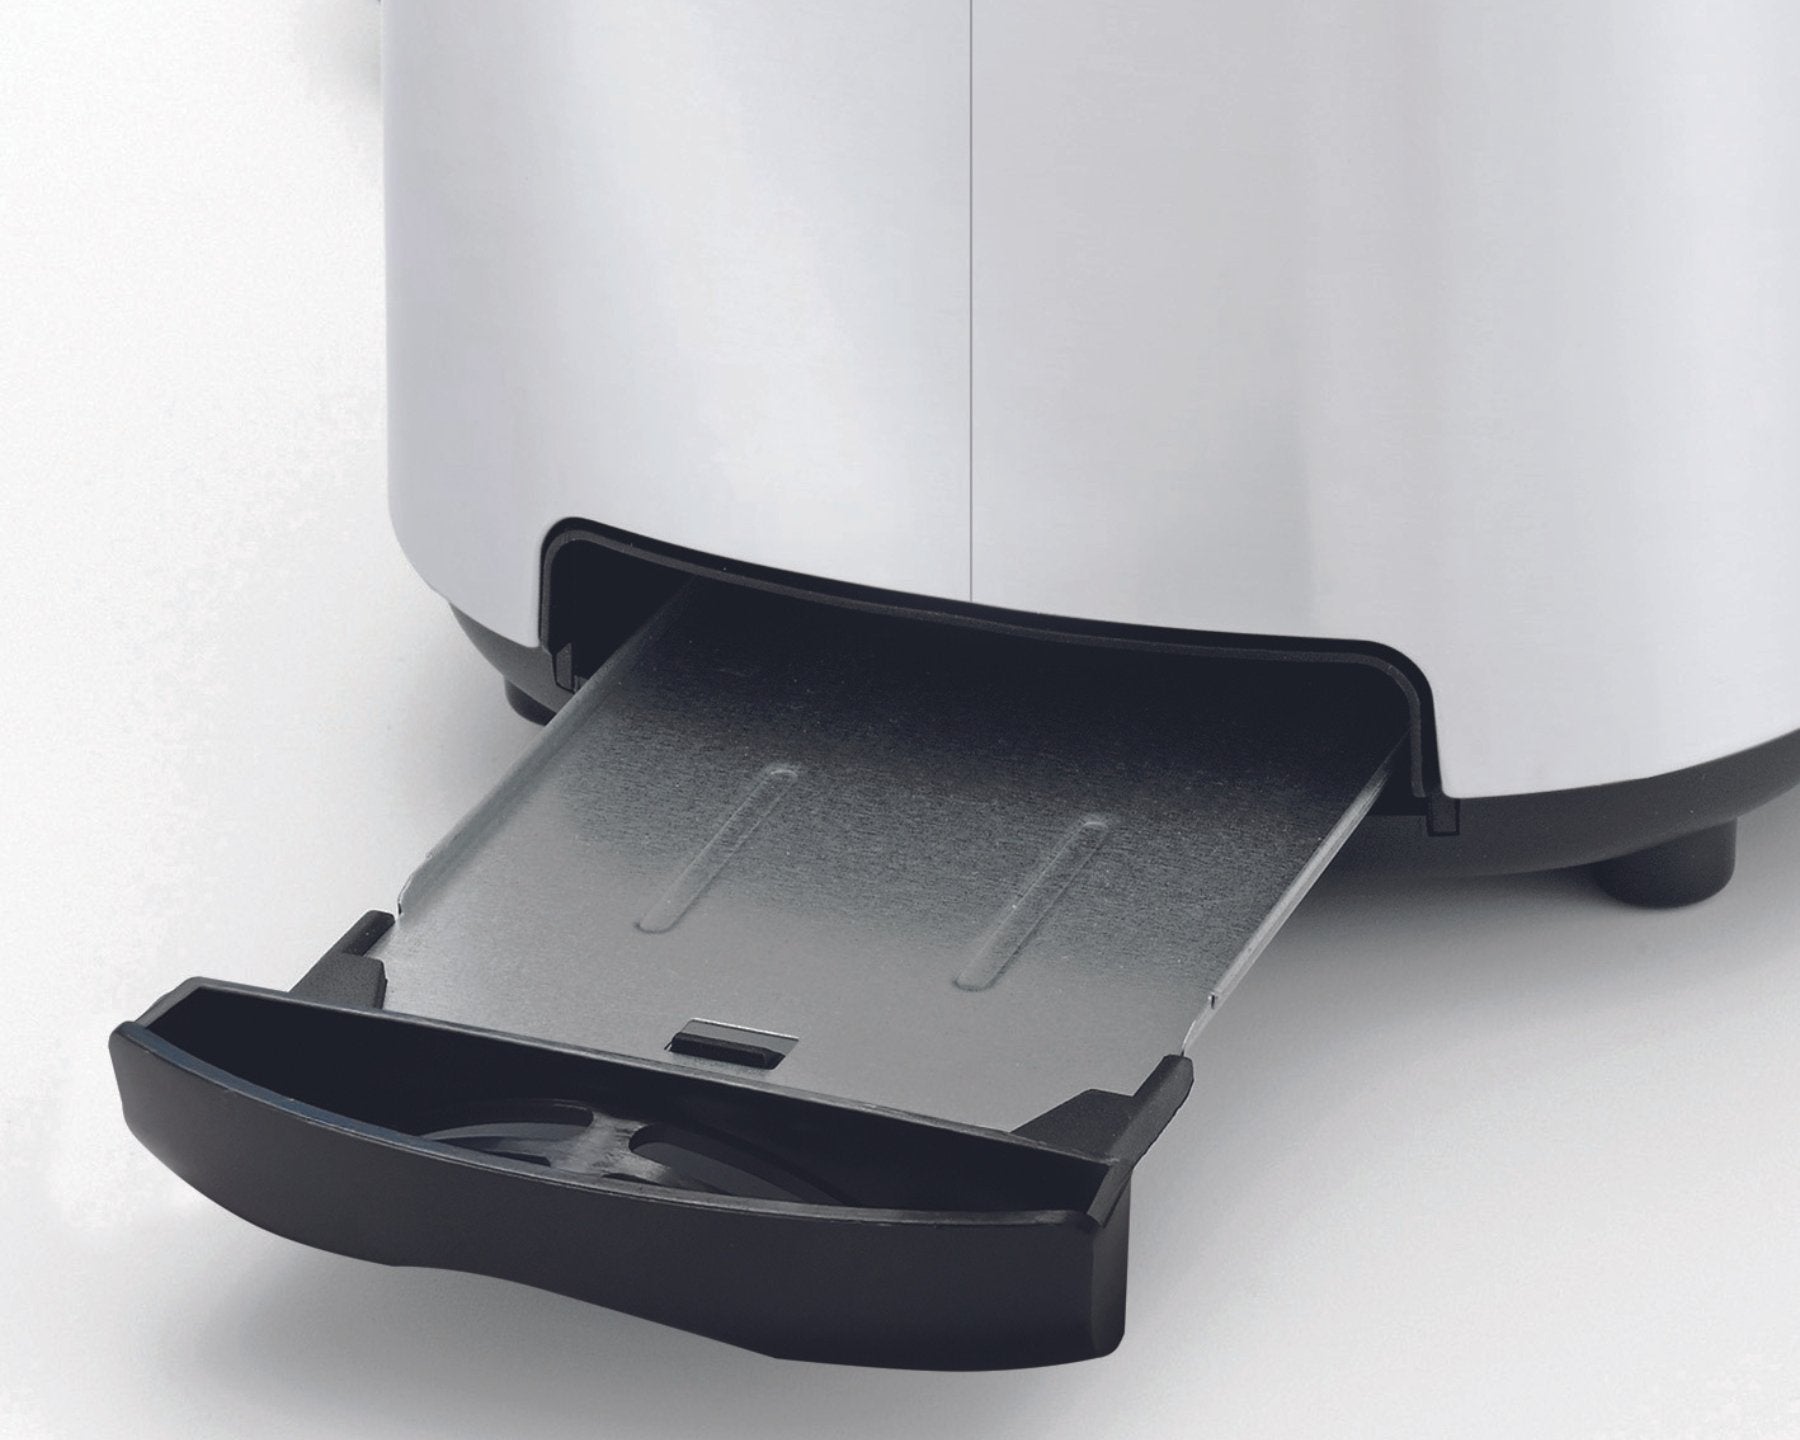 KOENIG Toaster mit 3 Funktionen - kitchen-more.ch, kostenloser Versand in der ganzen Schweiz